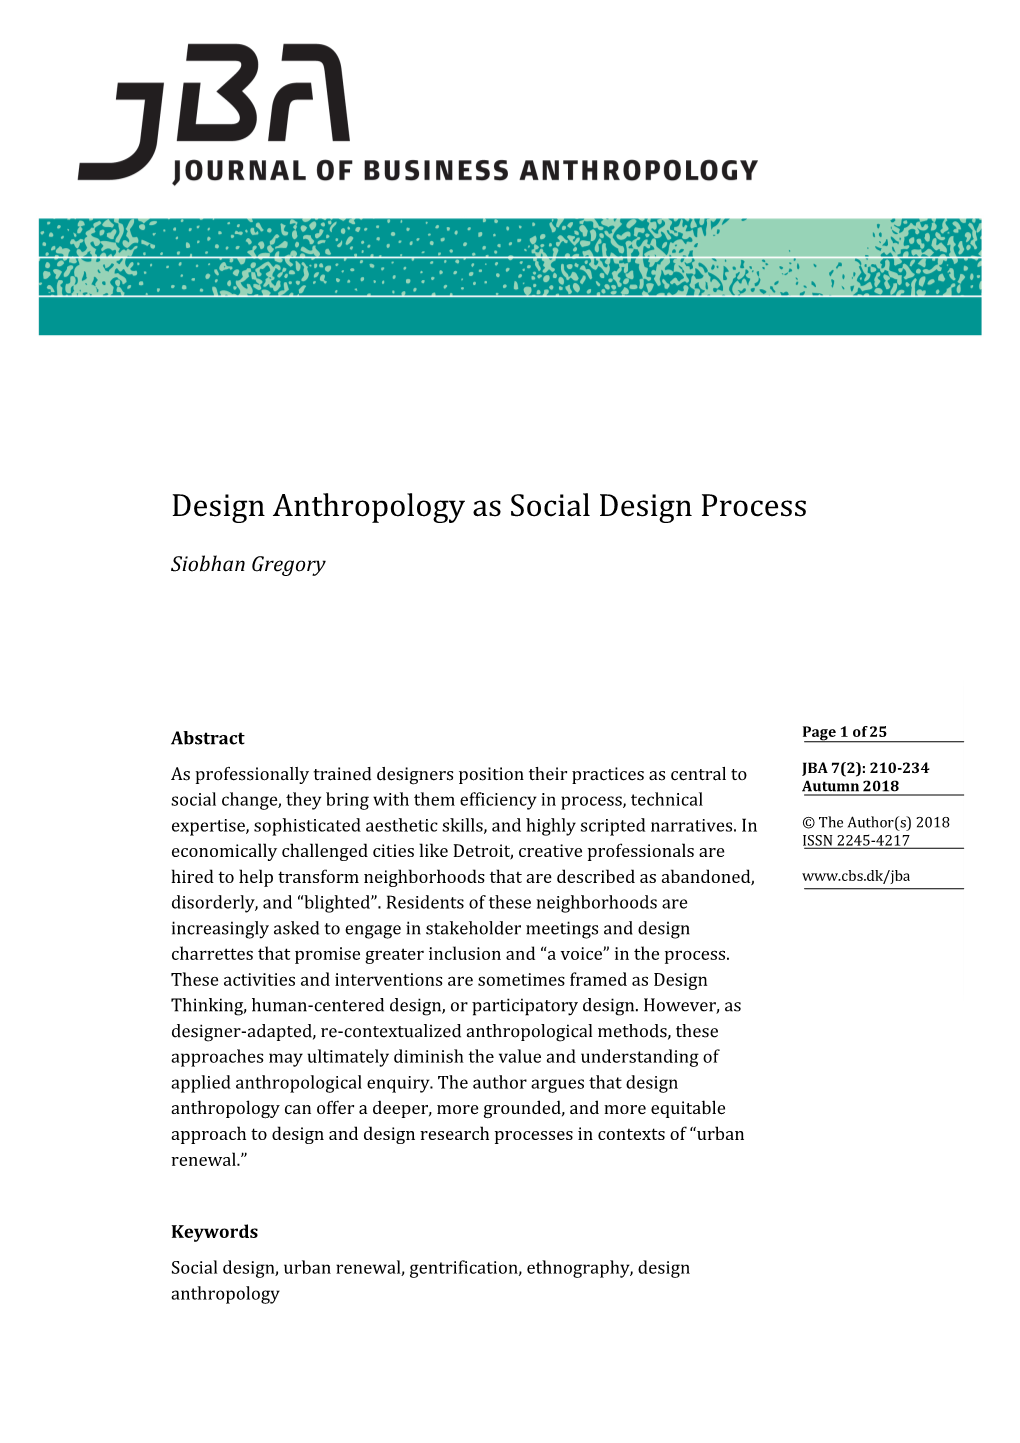 Design Anthropology As Social Design Process